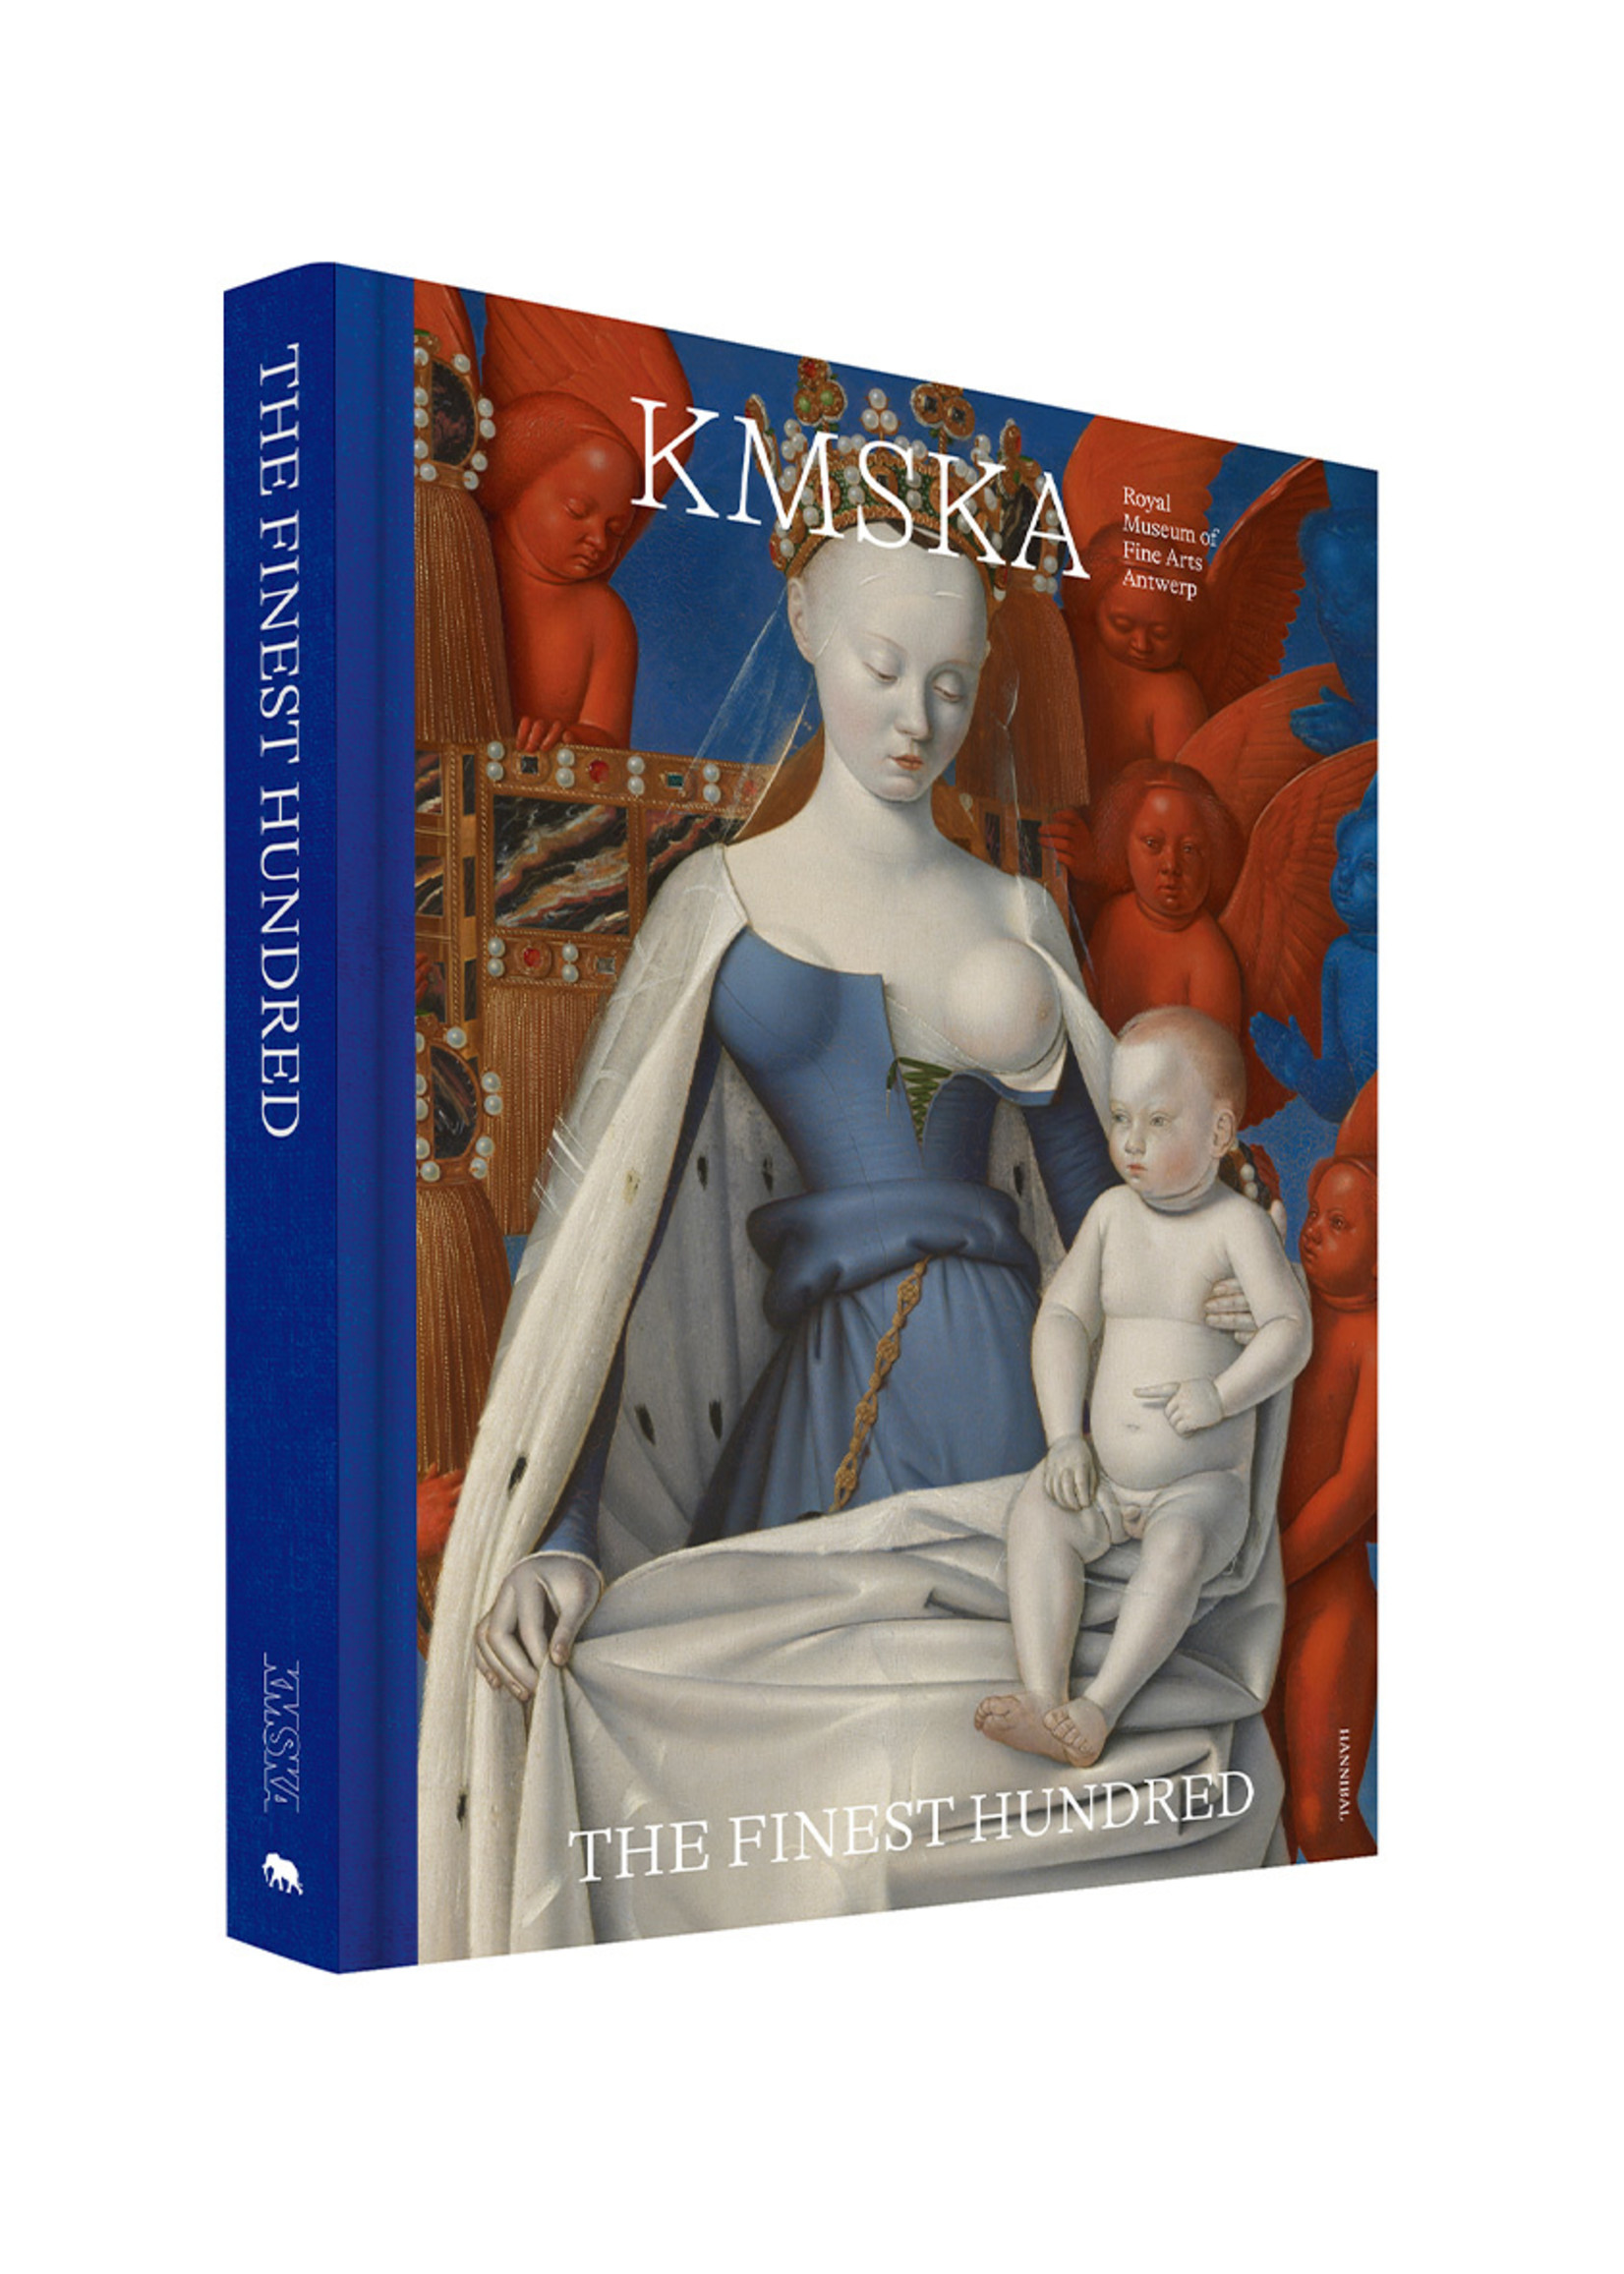 KMSKA – Box Set Limited Edition English Version